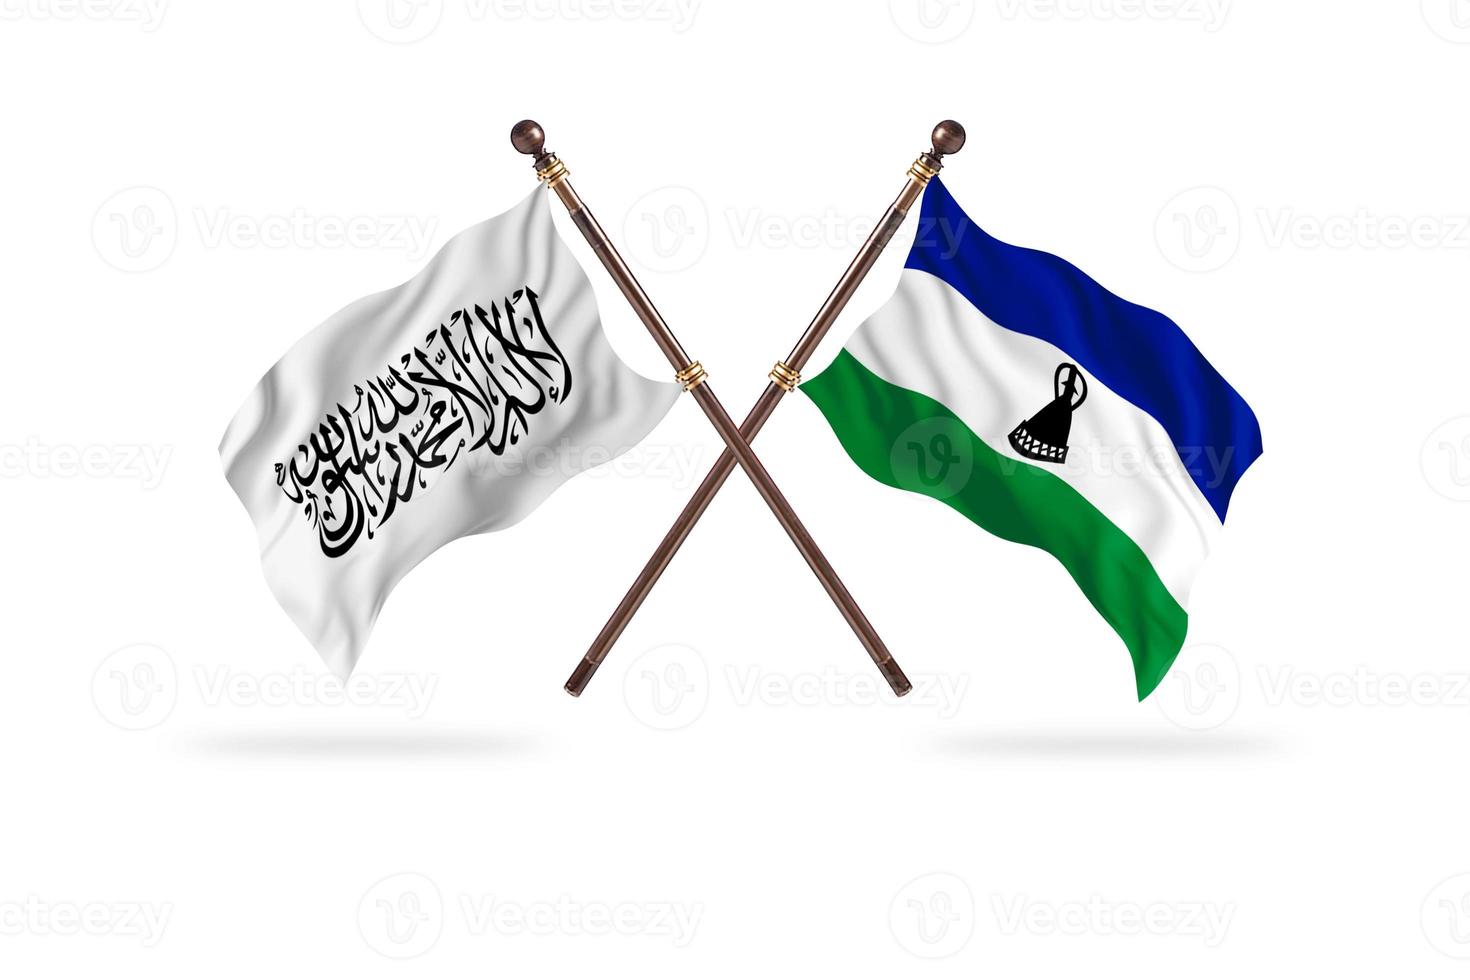 Émirat islamique d'afghanistan contre le lesotho deux drapeaux de pays photo